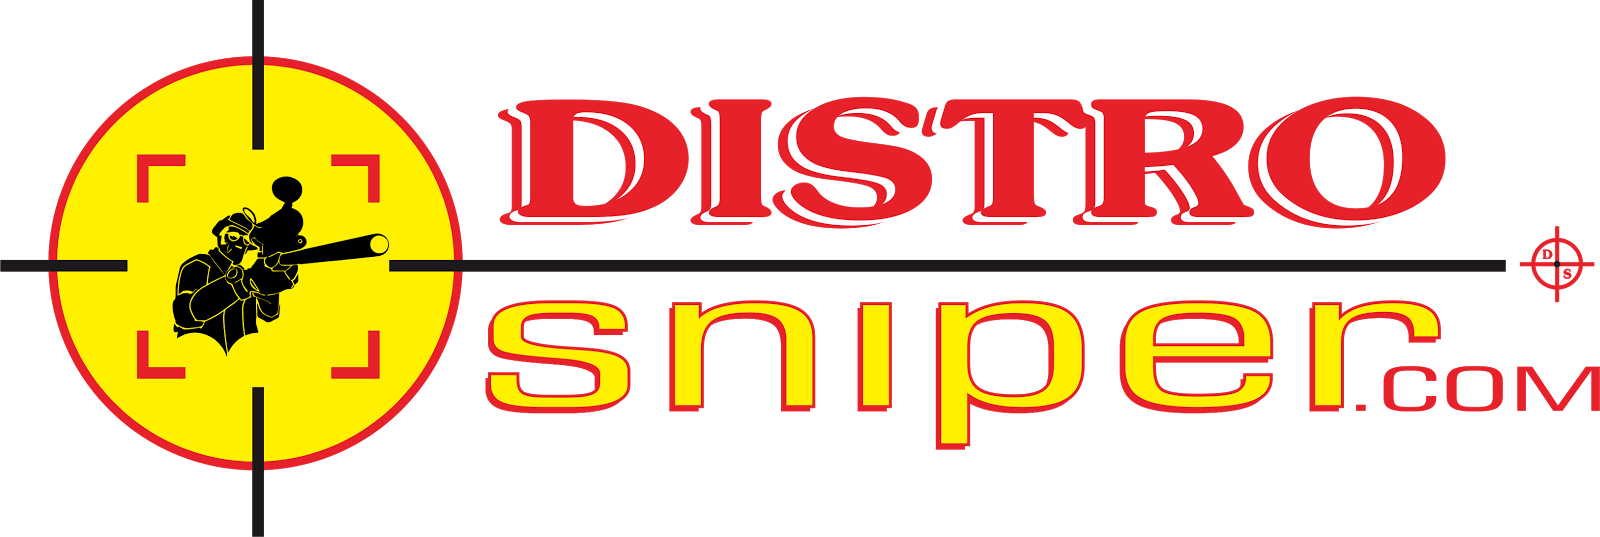 Distro Sniper Group